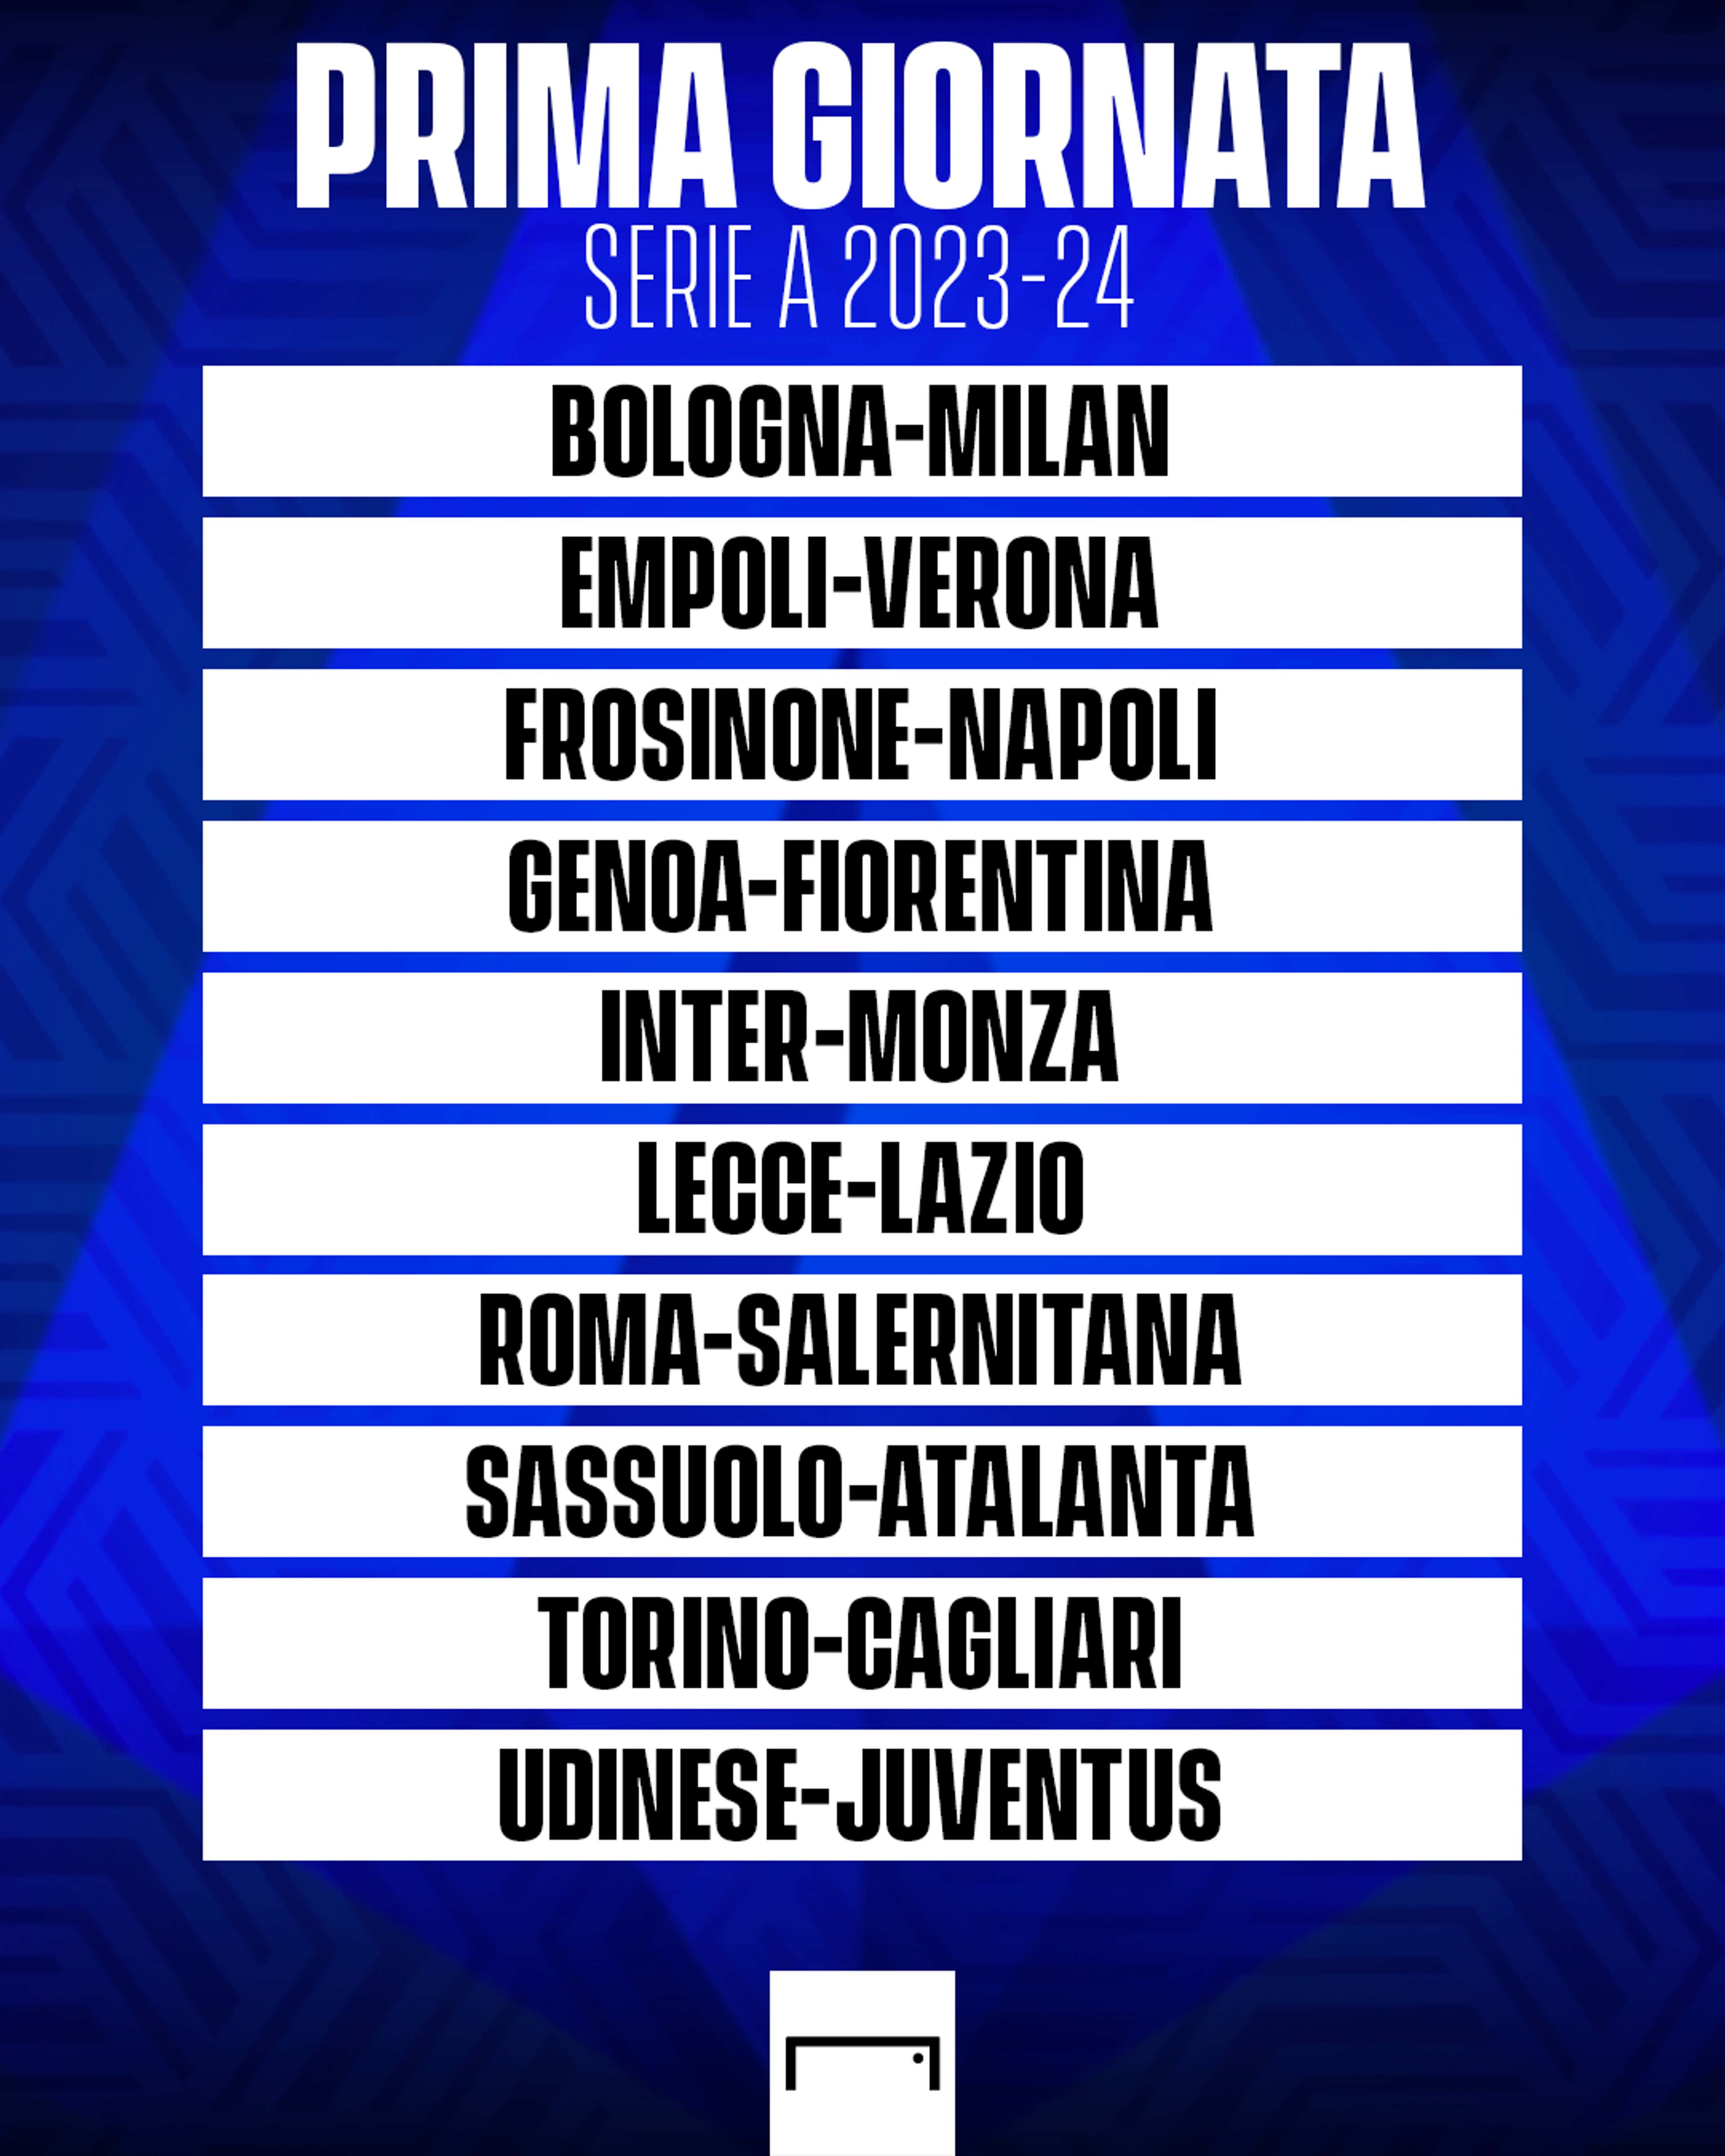 Calendario Serie A 2023/2024, la prima giornata: Udinese-Juventus